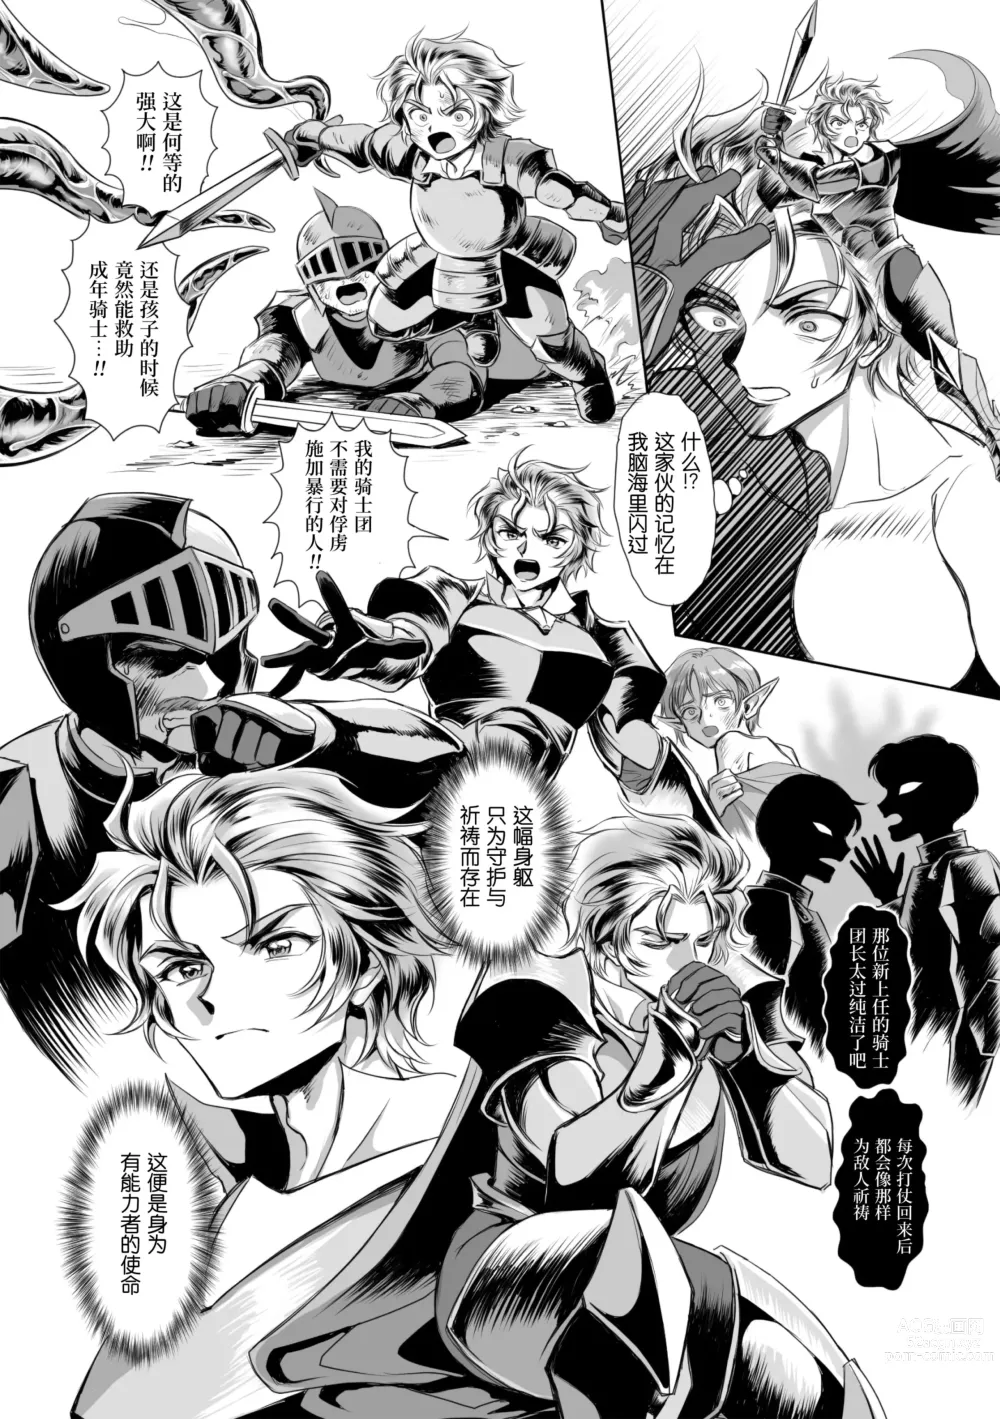 Page 9 of manga  附身奸骑士 斯塔里昂 被恶心男夺取意识凄惨高潮! (decensored)